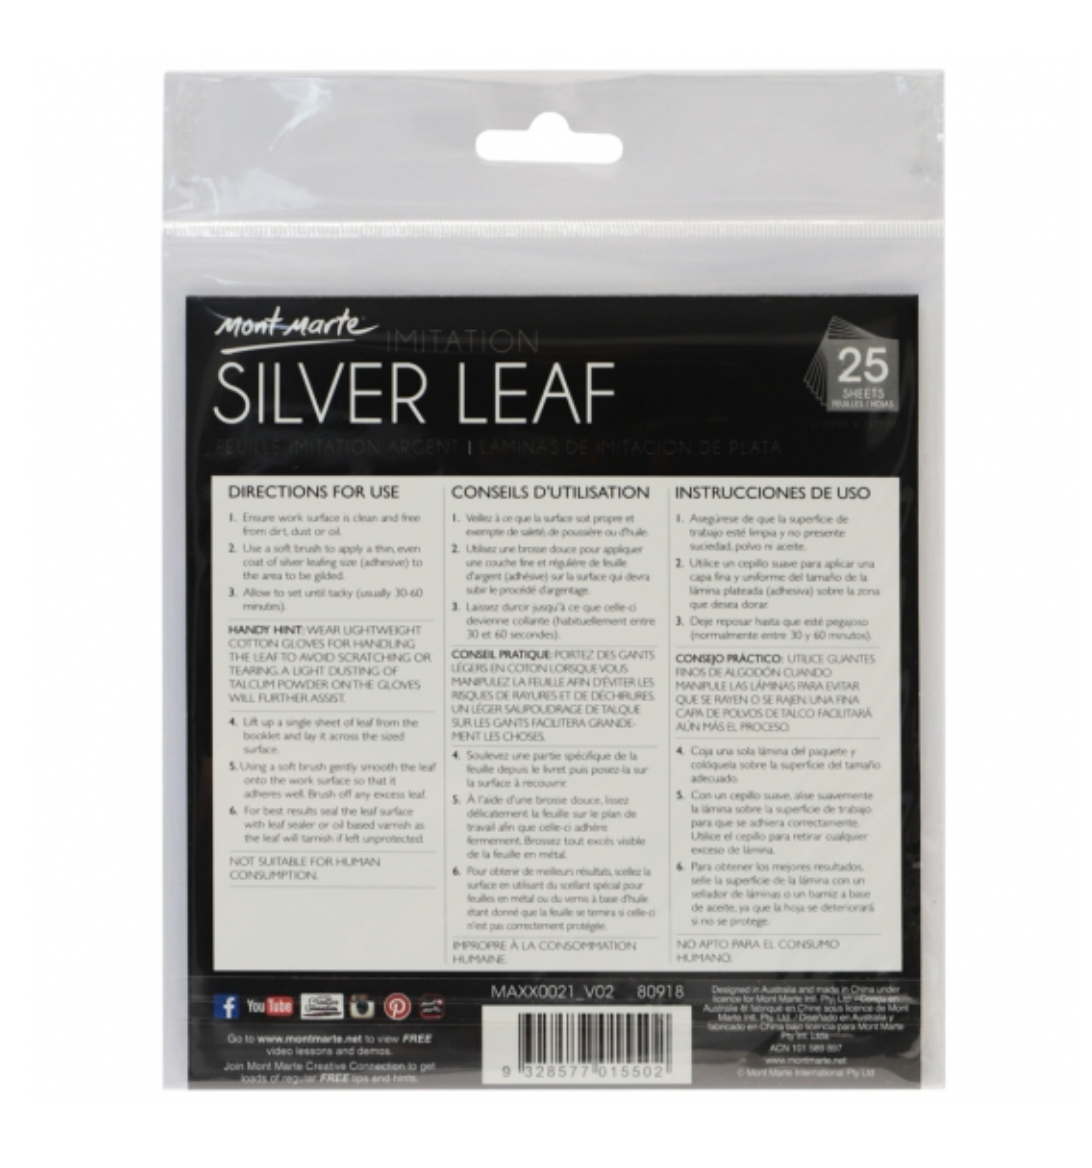 Imitation Silver Leaf 14x14cm 25 Sheet